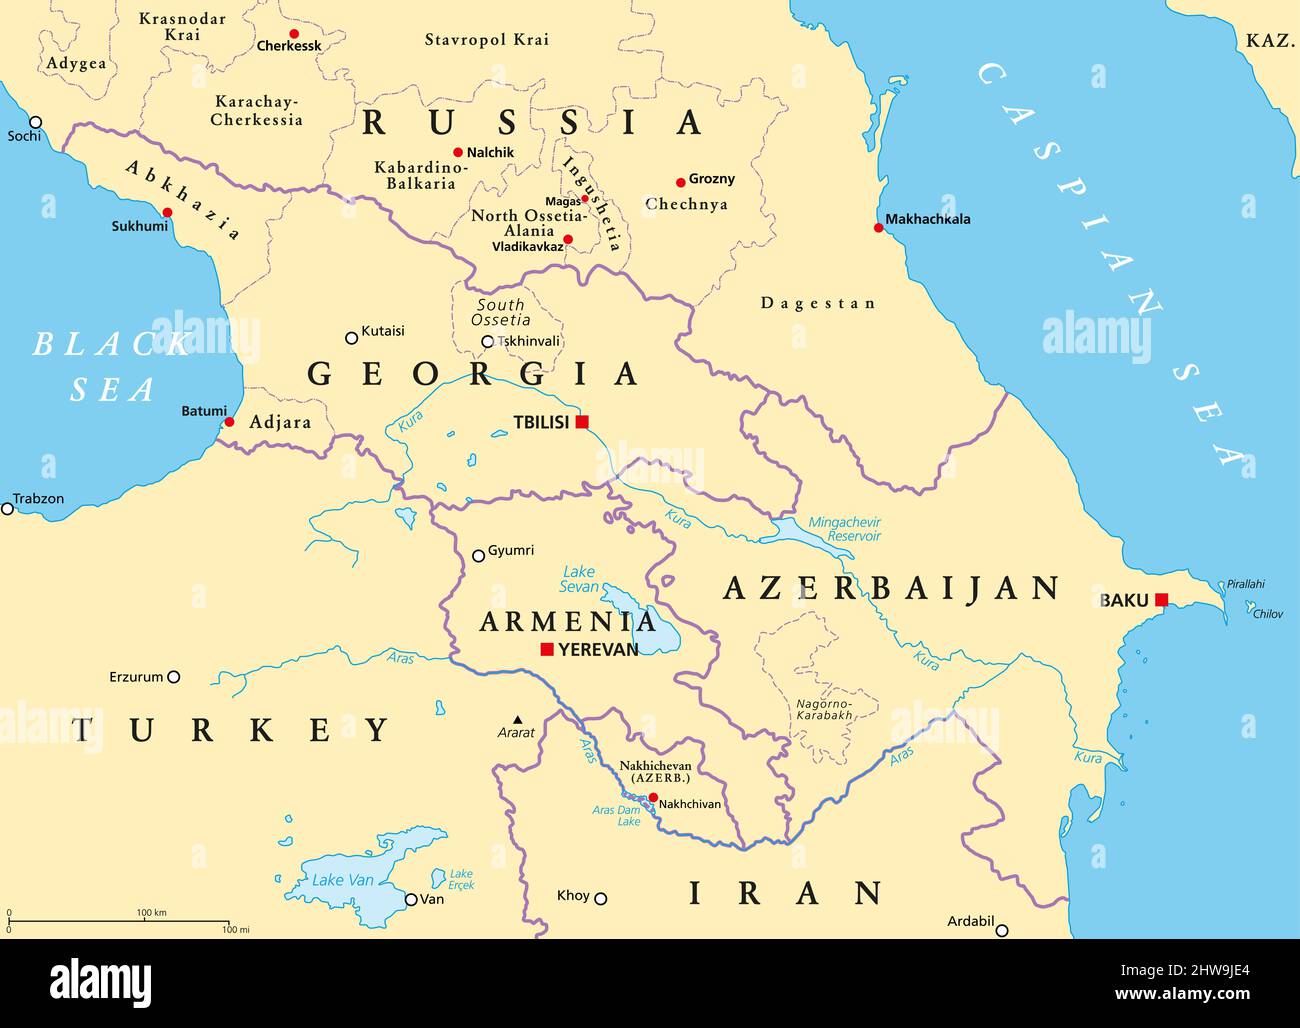 Kaukasus, Kaukasus, politische Landkarte. Region zwischen dem Schwarzen und dem Kaspischen Meer, hauptsächlich von Armenien, Aserbaidschan, Georgien und Teilen Südrusslands besetzt. Stockfoto